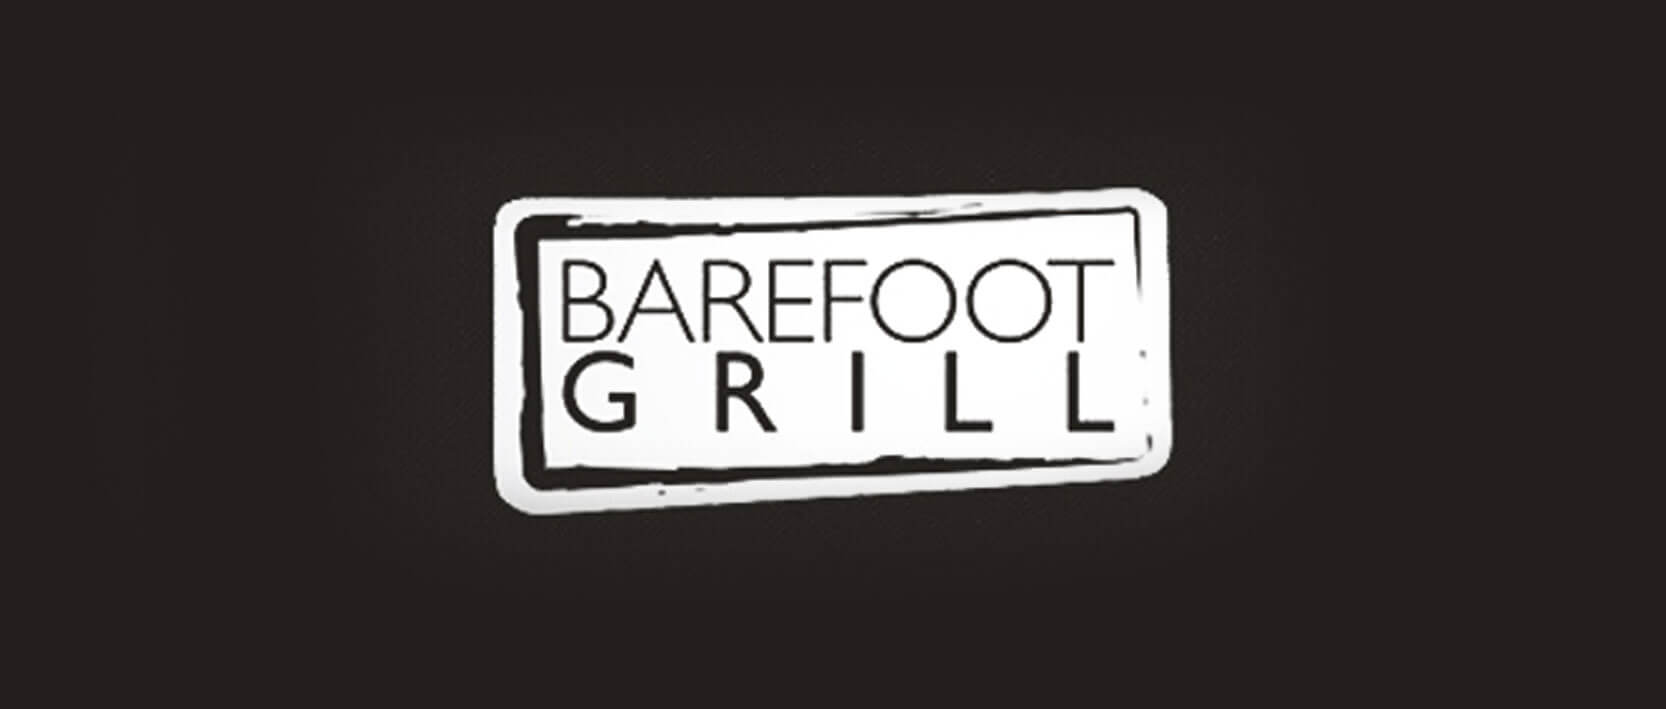 Secrets Vallarta Bay Puerto Vallarta Restaurants and Bars - Barefoot Grill